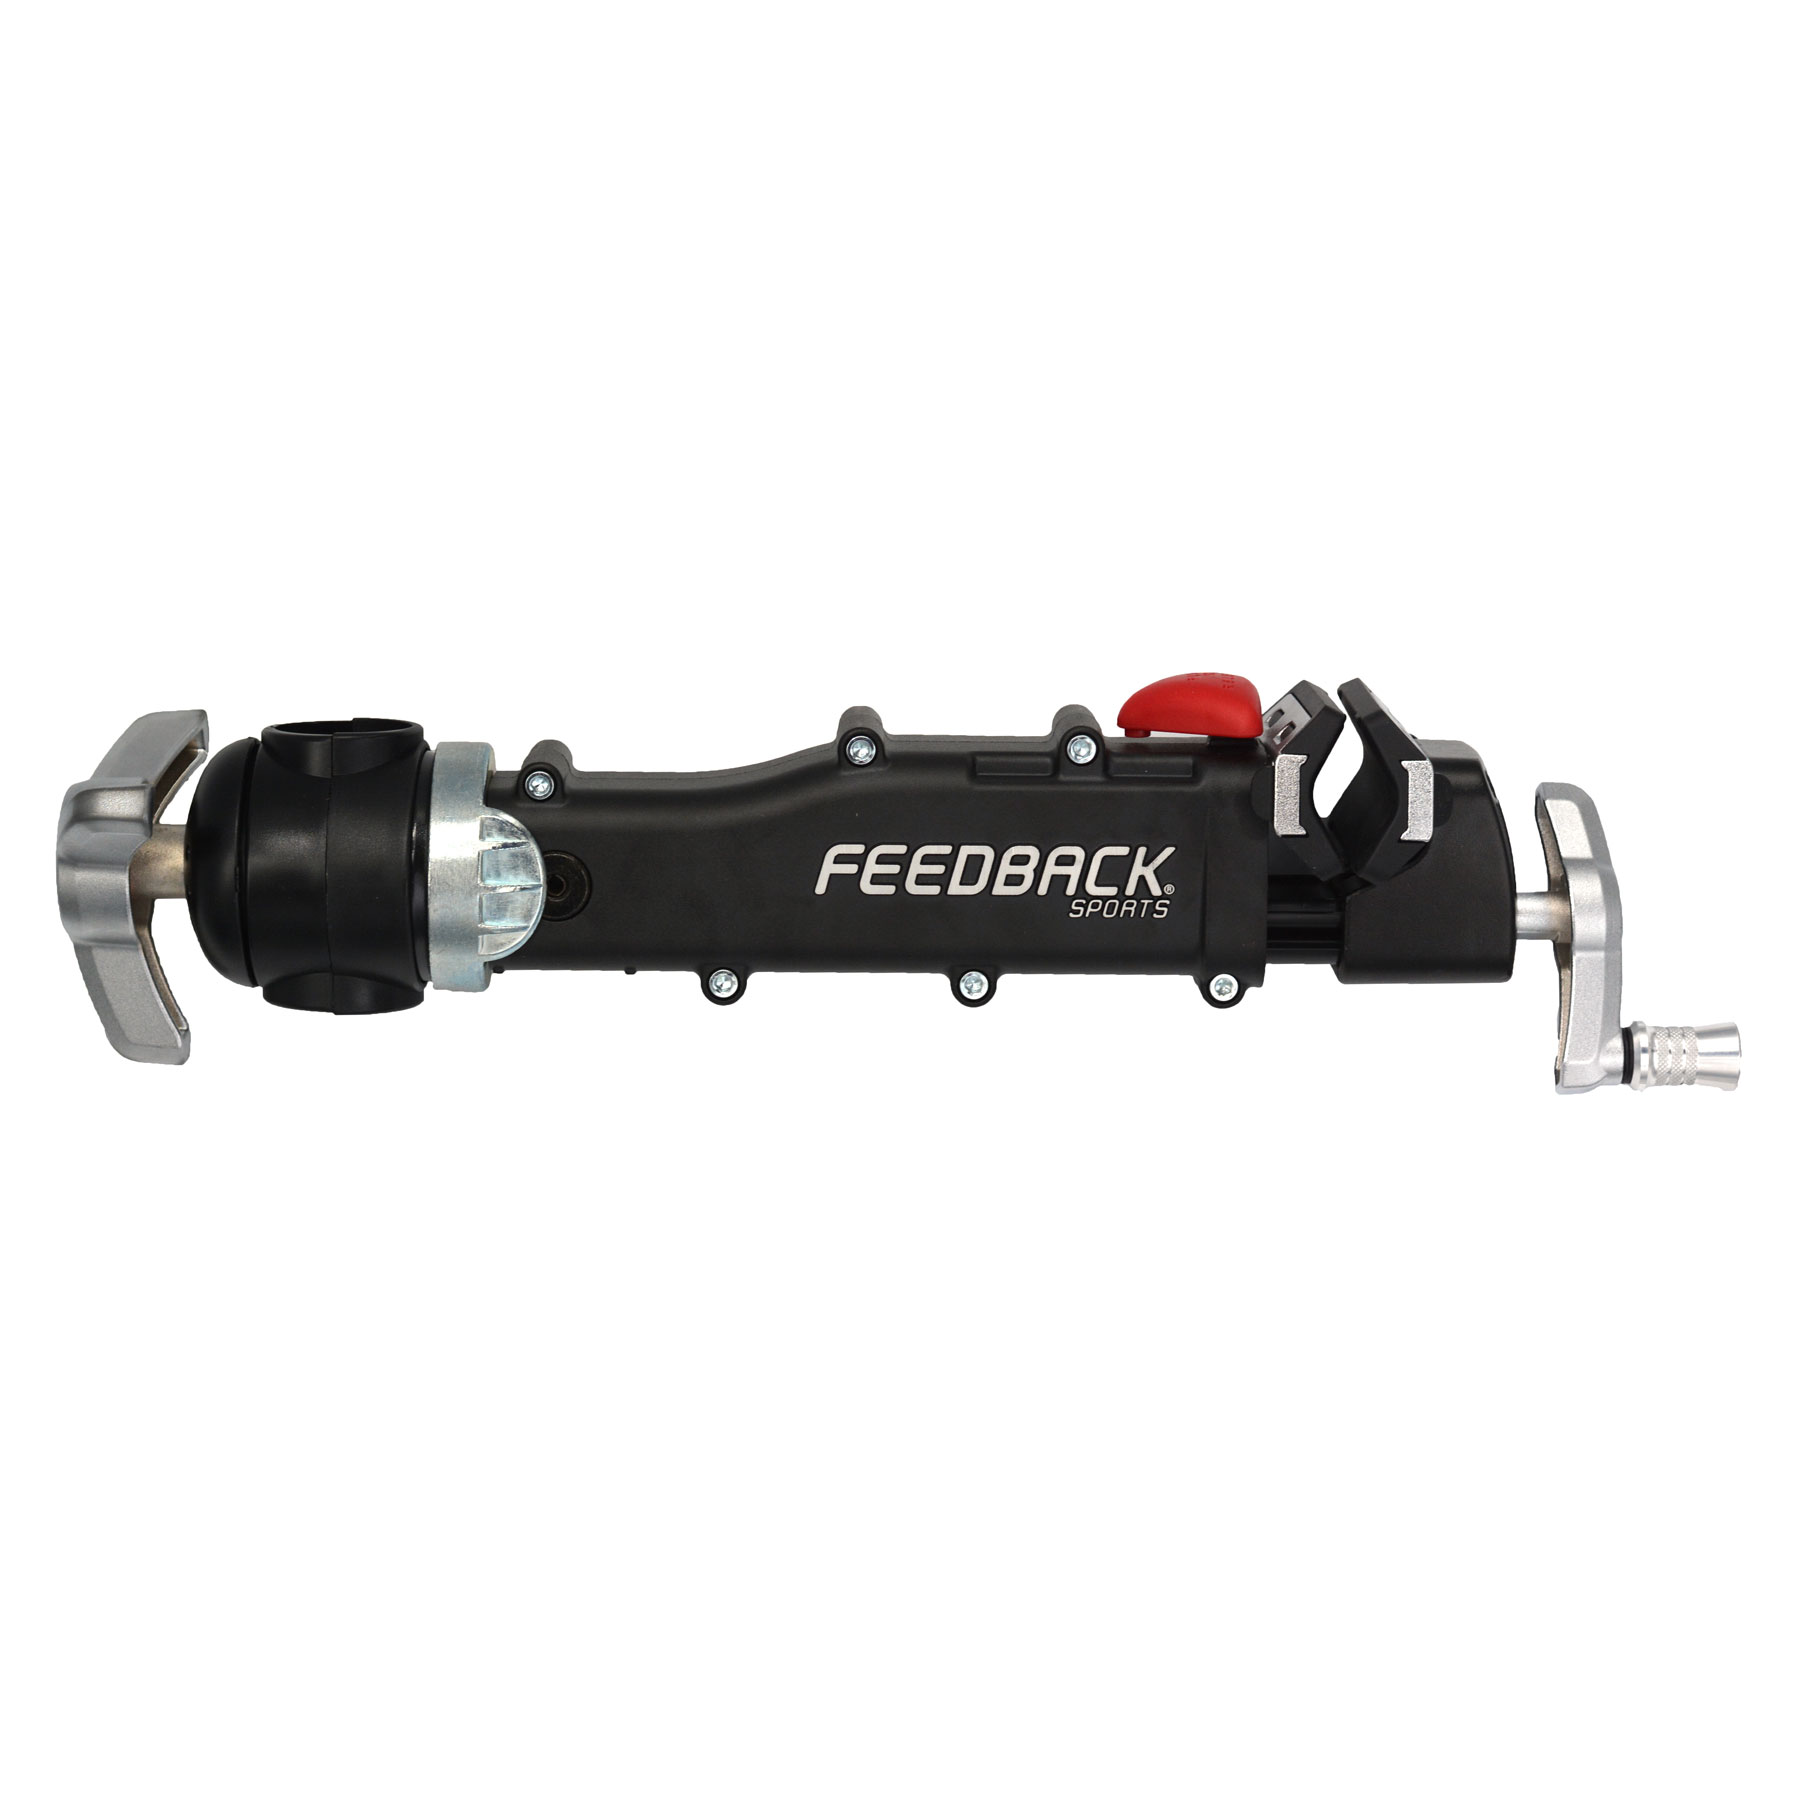 Productfoto van Feedback Sports Klemadapter voor Pro Mechanic